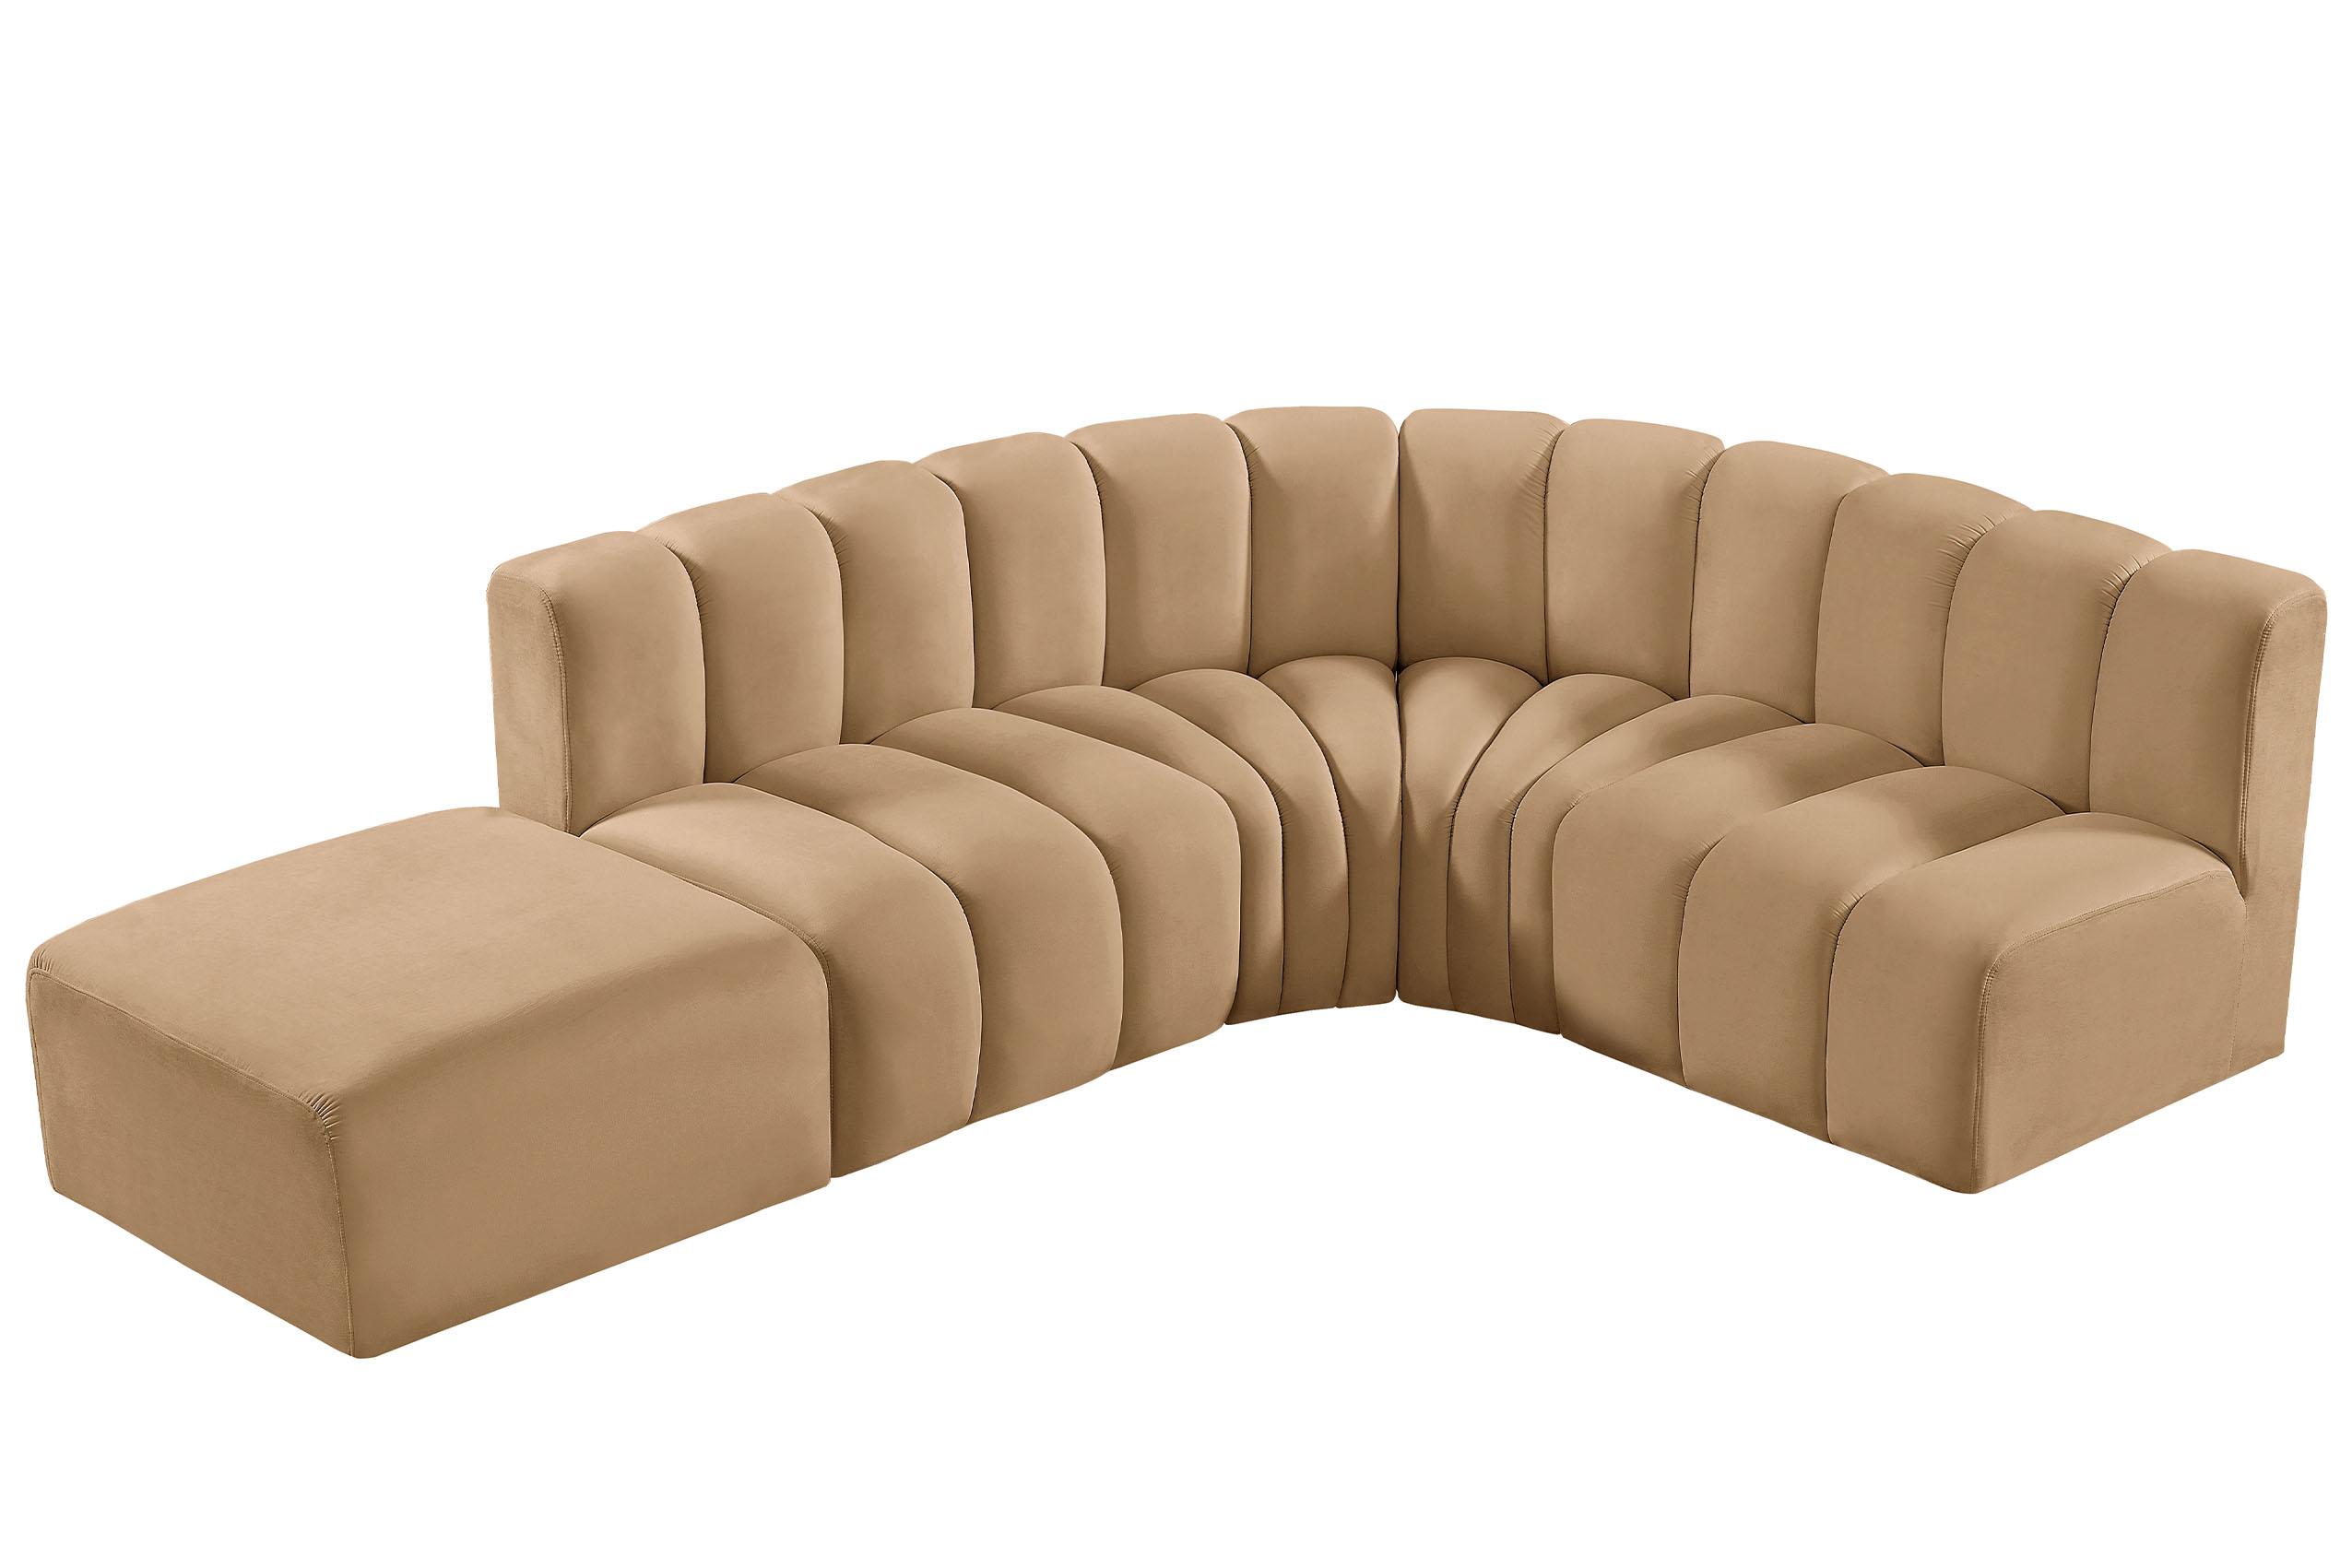 

    
103Camel-S5C Meridian Furniture Modular Sectional Sofa
